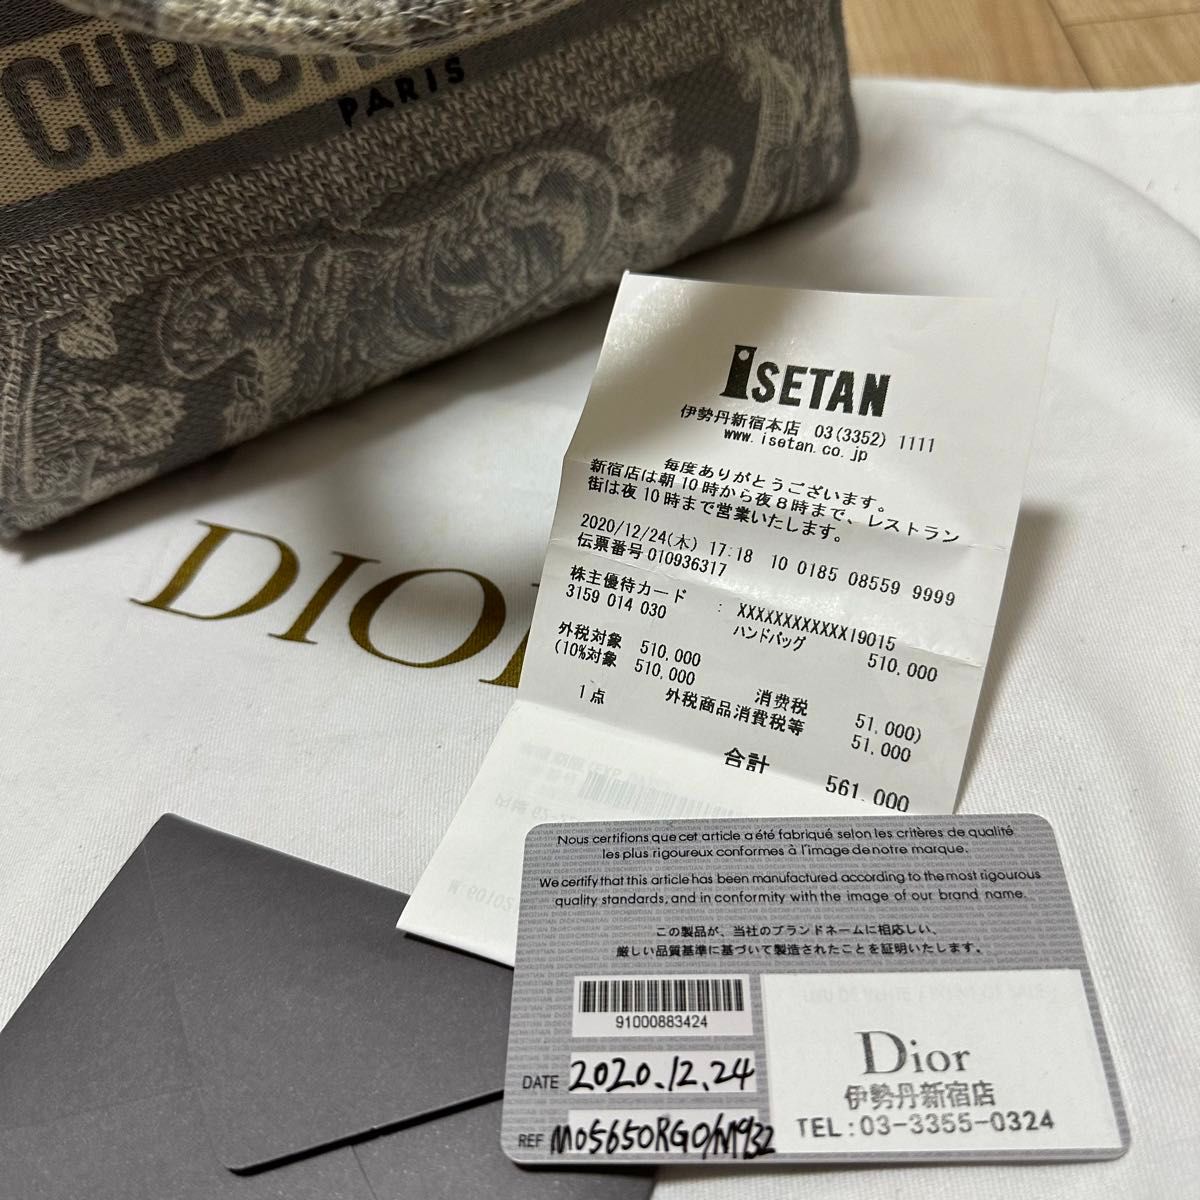 処分商品Dior  クリスチャンディオール バッグ　 ハンドバッグ 2WAY  ChristianDior レディディオール